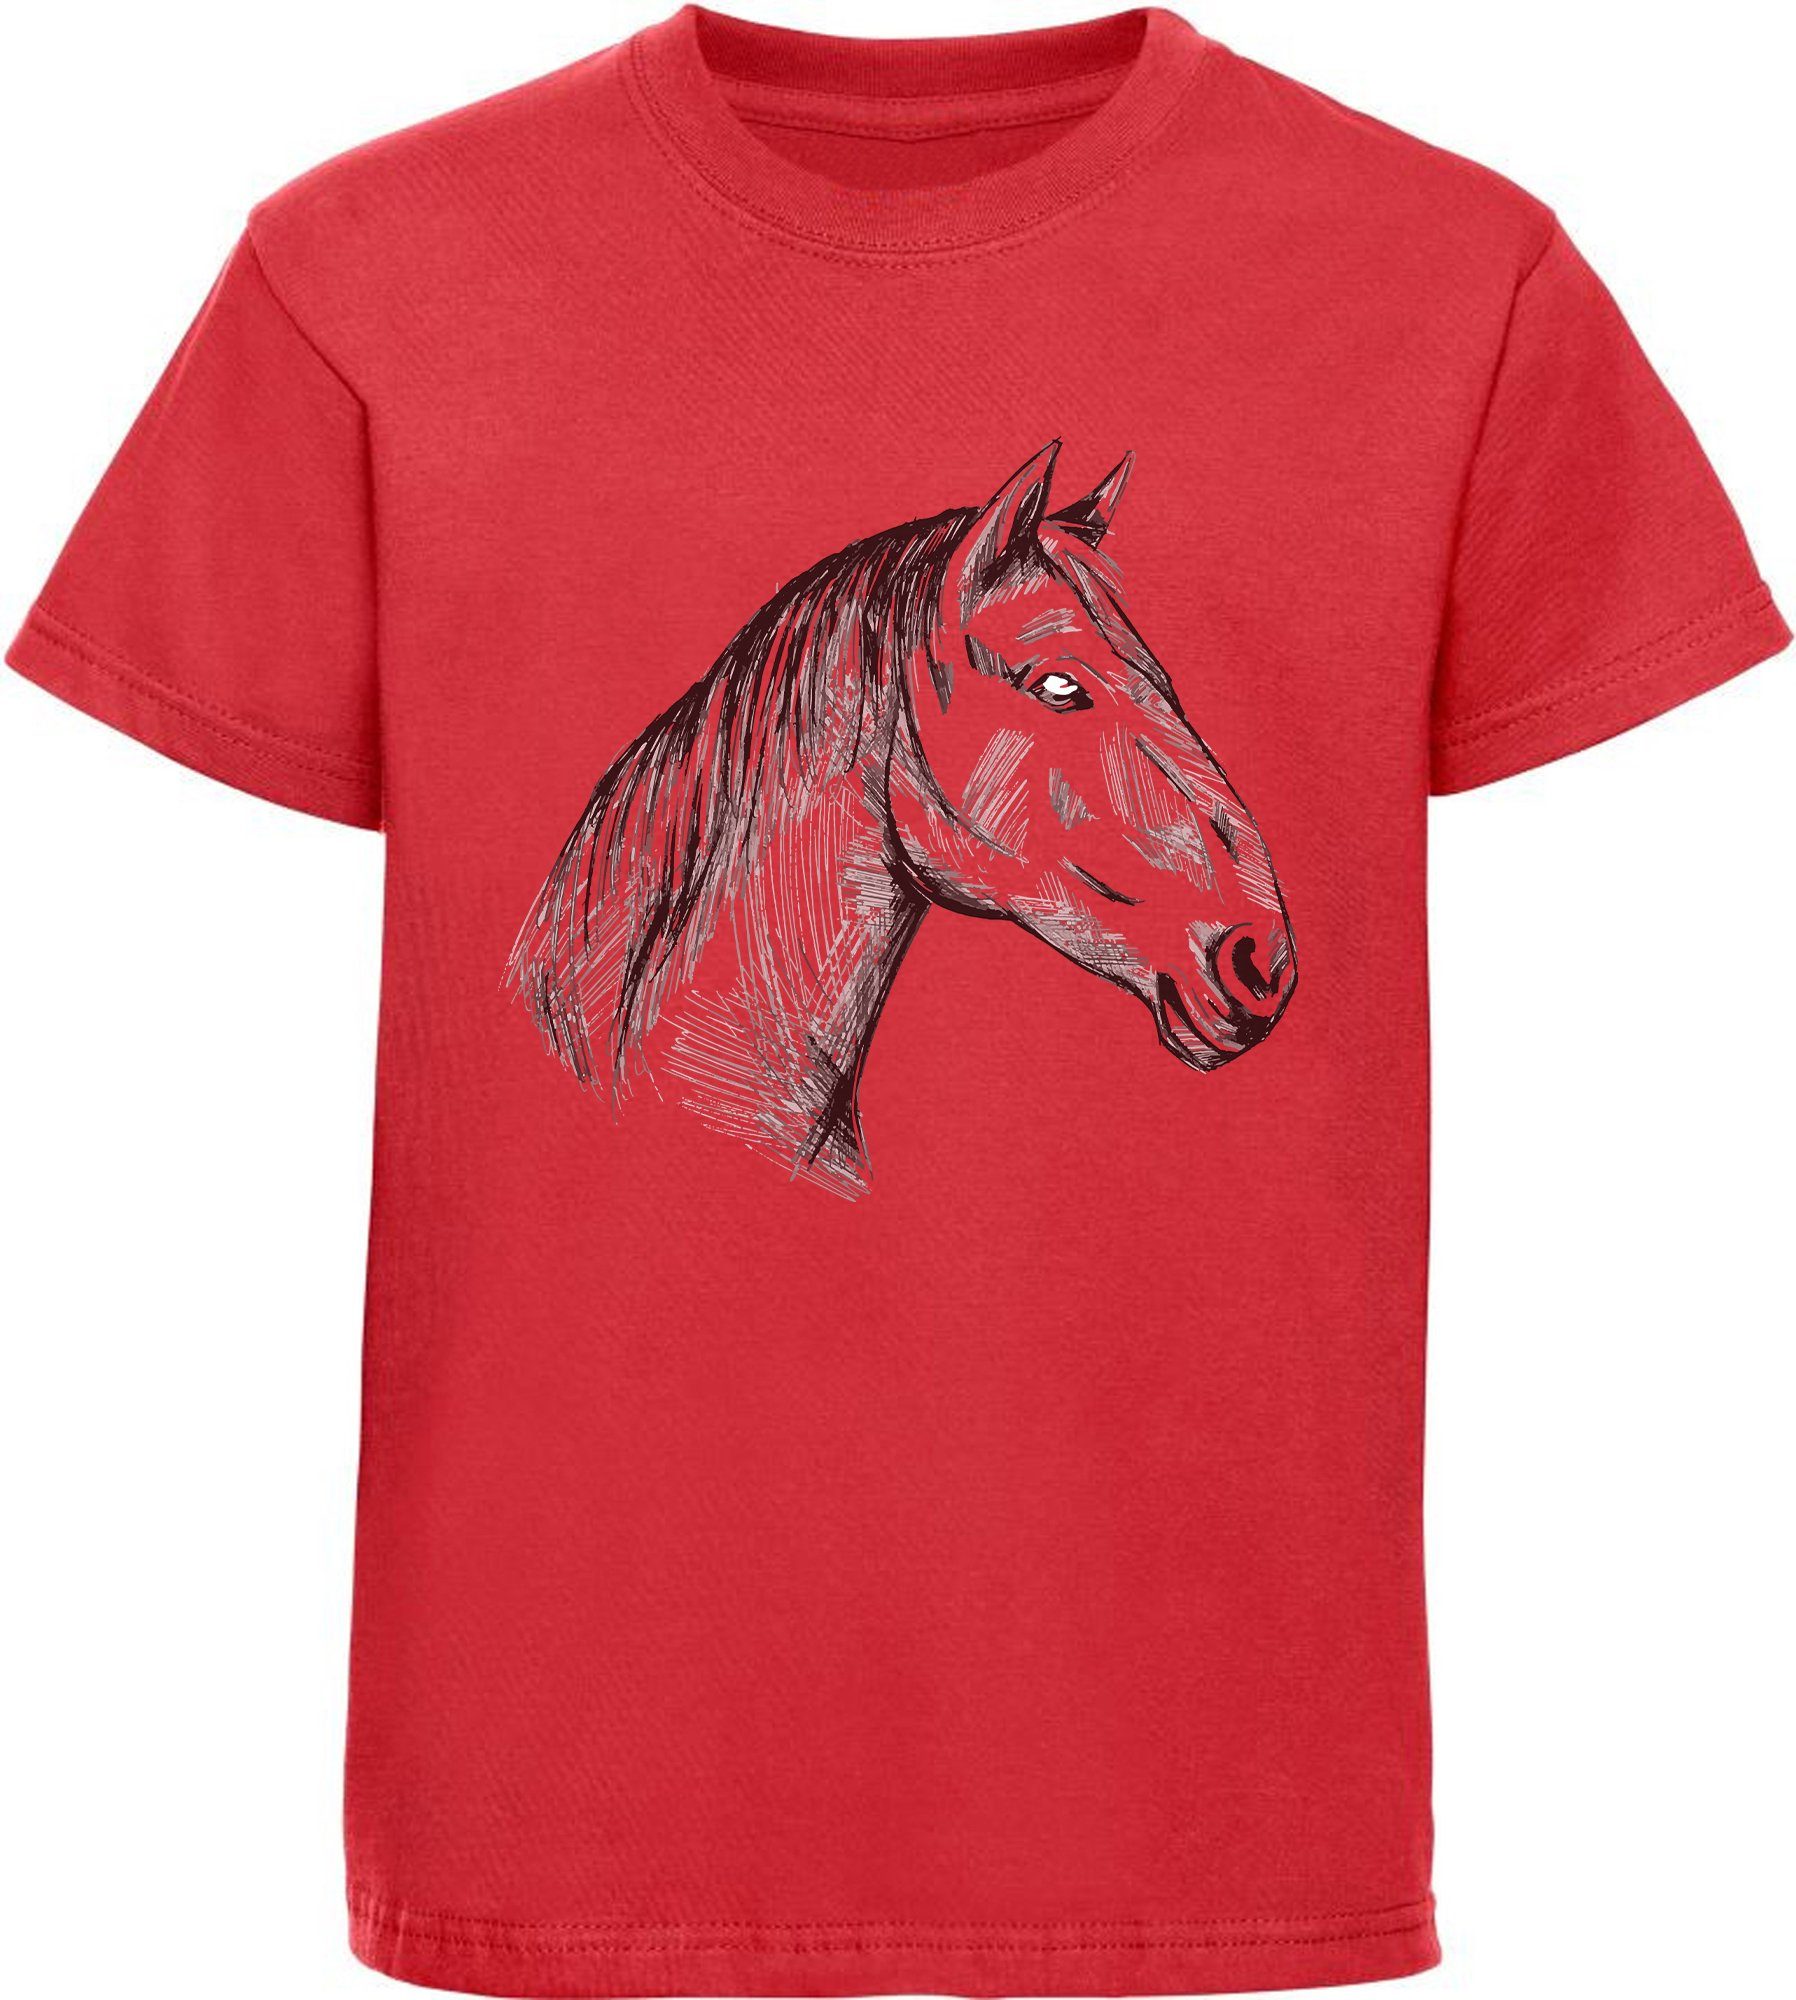 Gehen Sie zum Online-Shop! MyDesign24 Print-Shirt mit Baumwollshirt Mädchen i142 gezeichneter bedrucktes Pferdekopf T-Shirt Aufdruck, rot